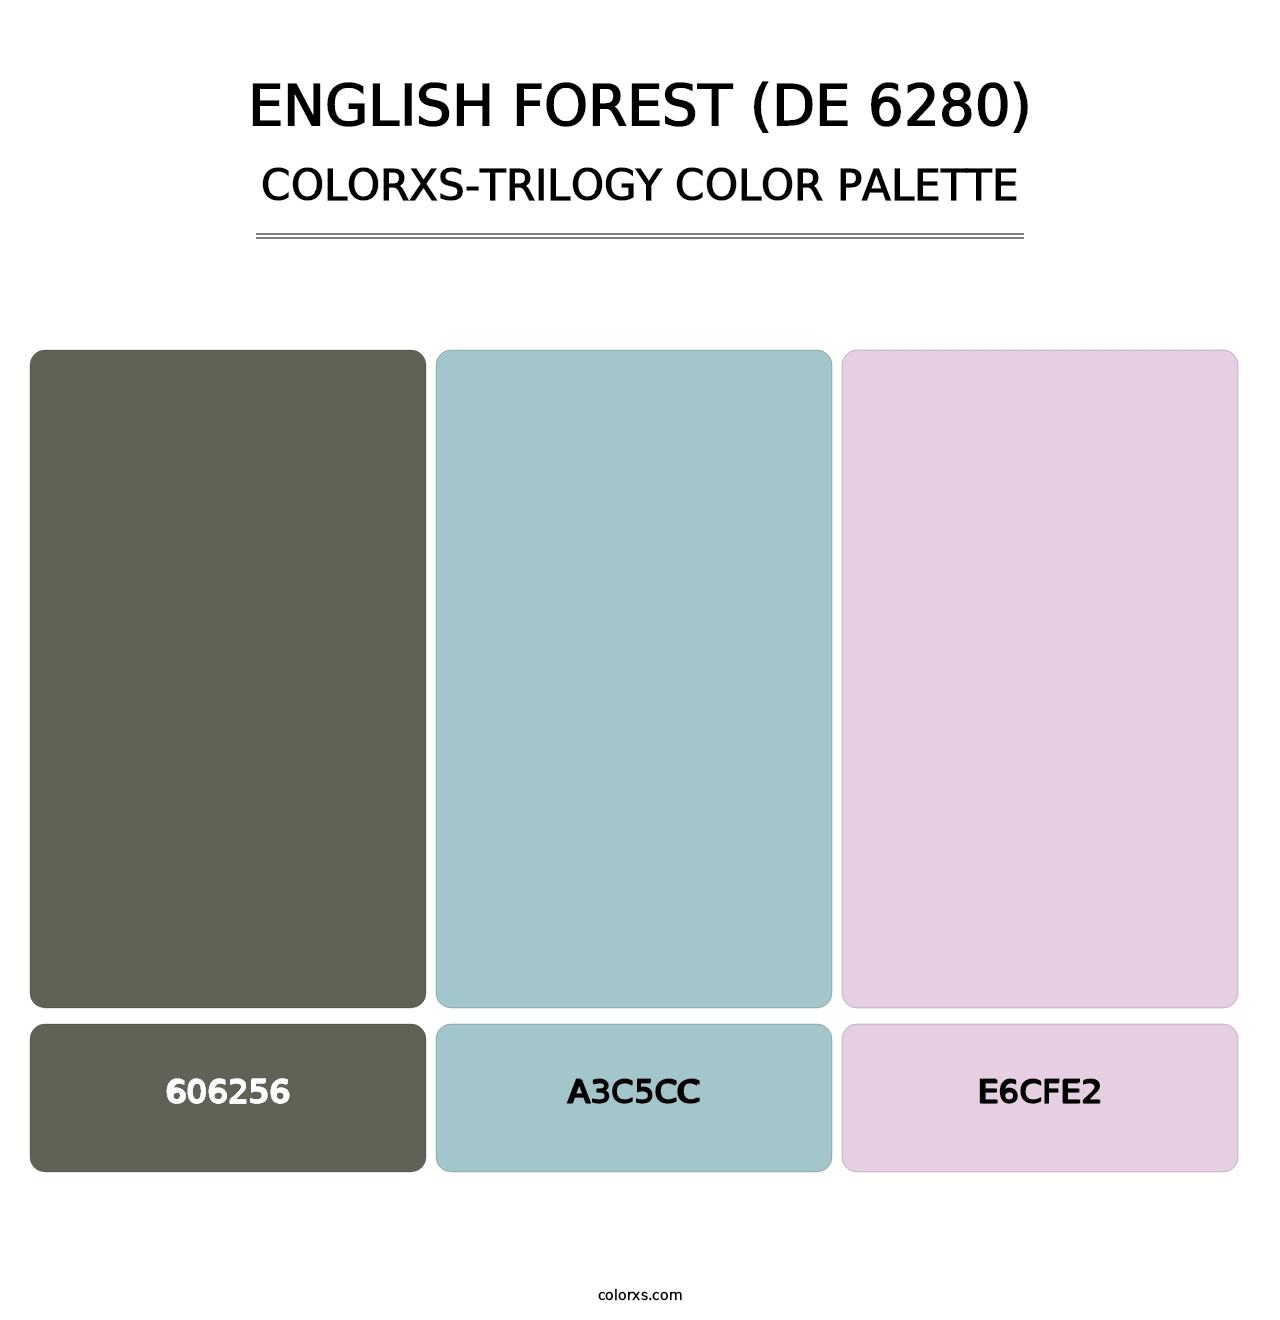 English Forest (DE 6280) - Colorxs Trilogy Palette